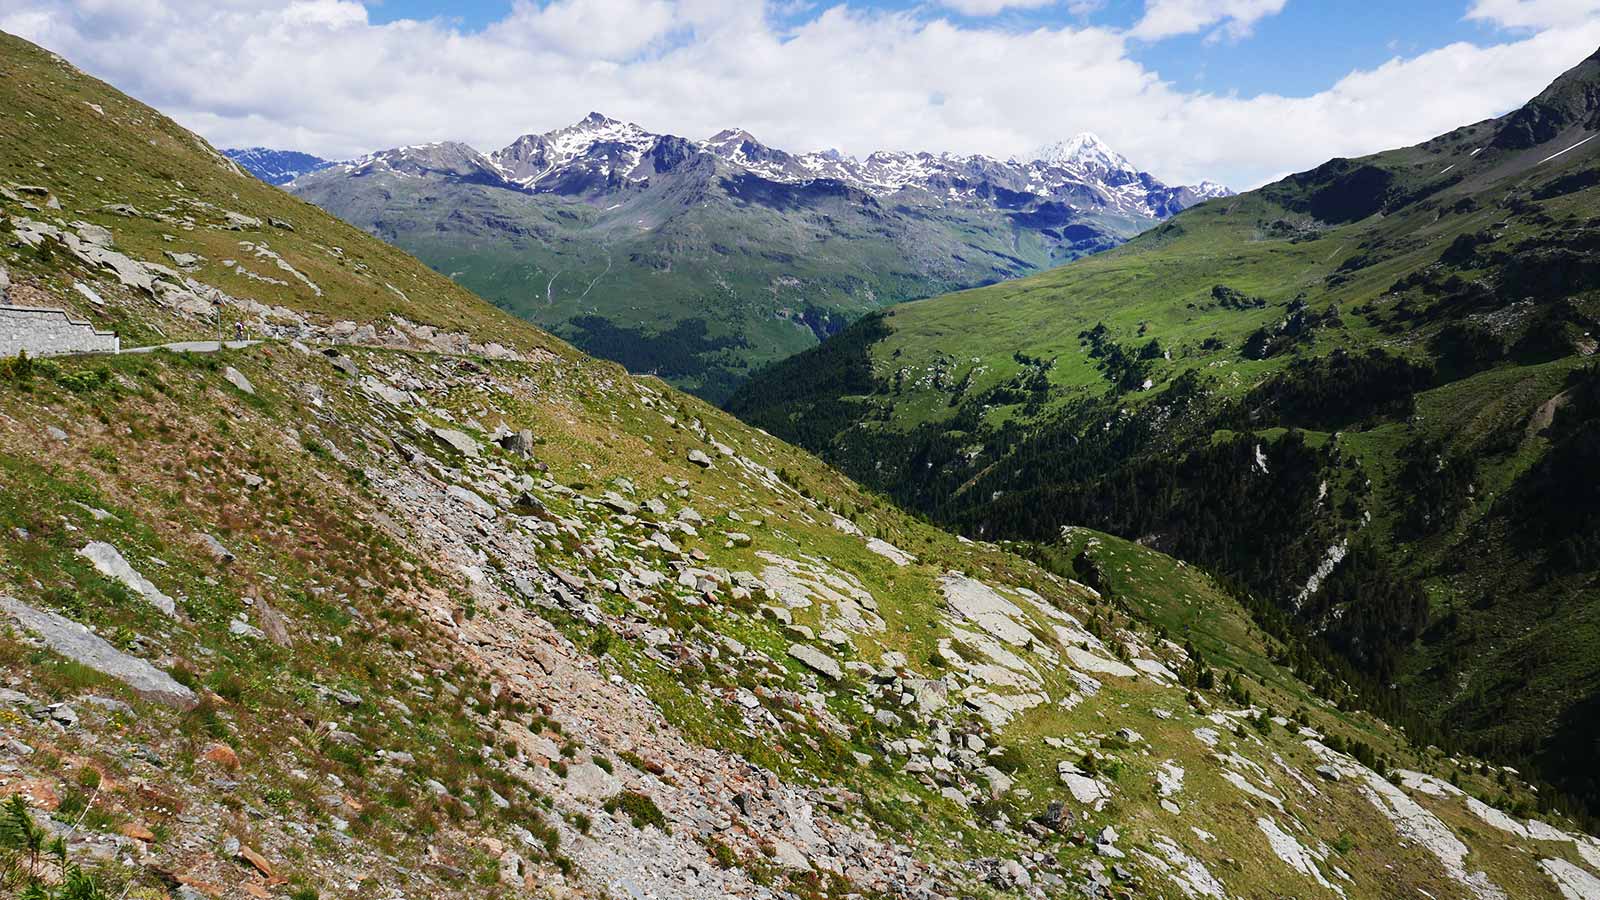 Existuje veľa vrcholov na lezenie. Priamo nad prihrávkou na východnú stranu je Corno dei Tre Signori (3360 m) a vedľa nej Monte Gaviola (3025). Na druhej strane cesty sa týči Monte Gavia (3223 m). Pokračovaním po ceste v smere na Bormio sa po necelých 3 km dostanete k pamätníku, odkiaľ začínajú trasy pre skupinu Punta San Matteo (3678 m). Do tejto skupiny patria Pizo Tresero (3594 m), Punta Pendranzini (3599), Cima Dosegu (3560) a niekoľko ďalších.